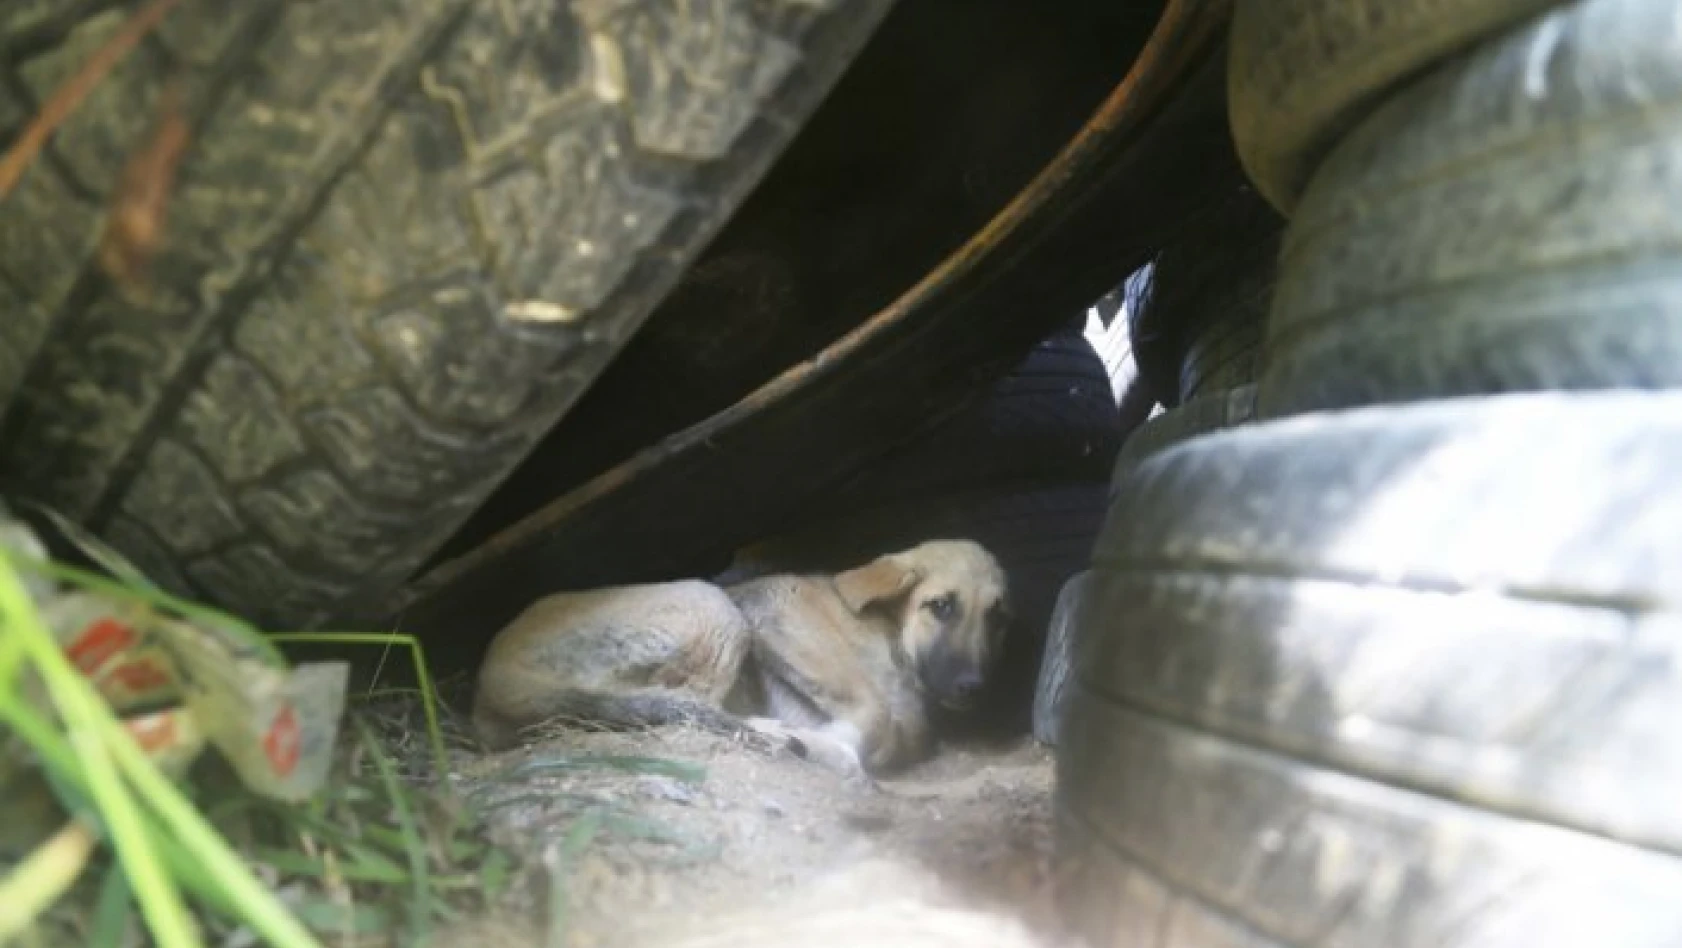 Lastiklerin arasından çıkamayan yavru köpekler kurtarıldı